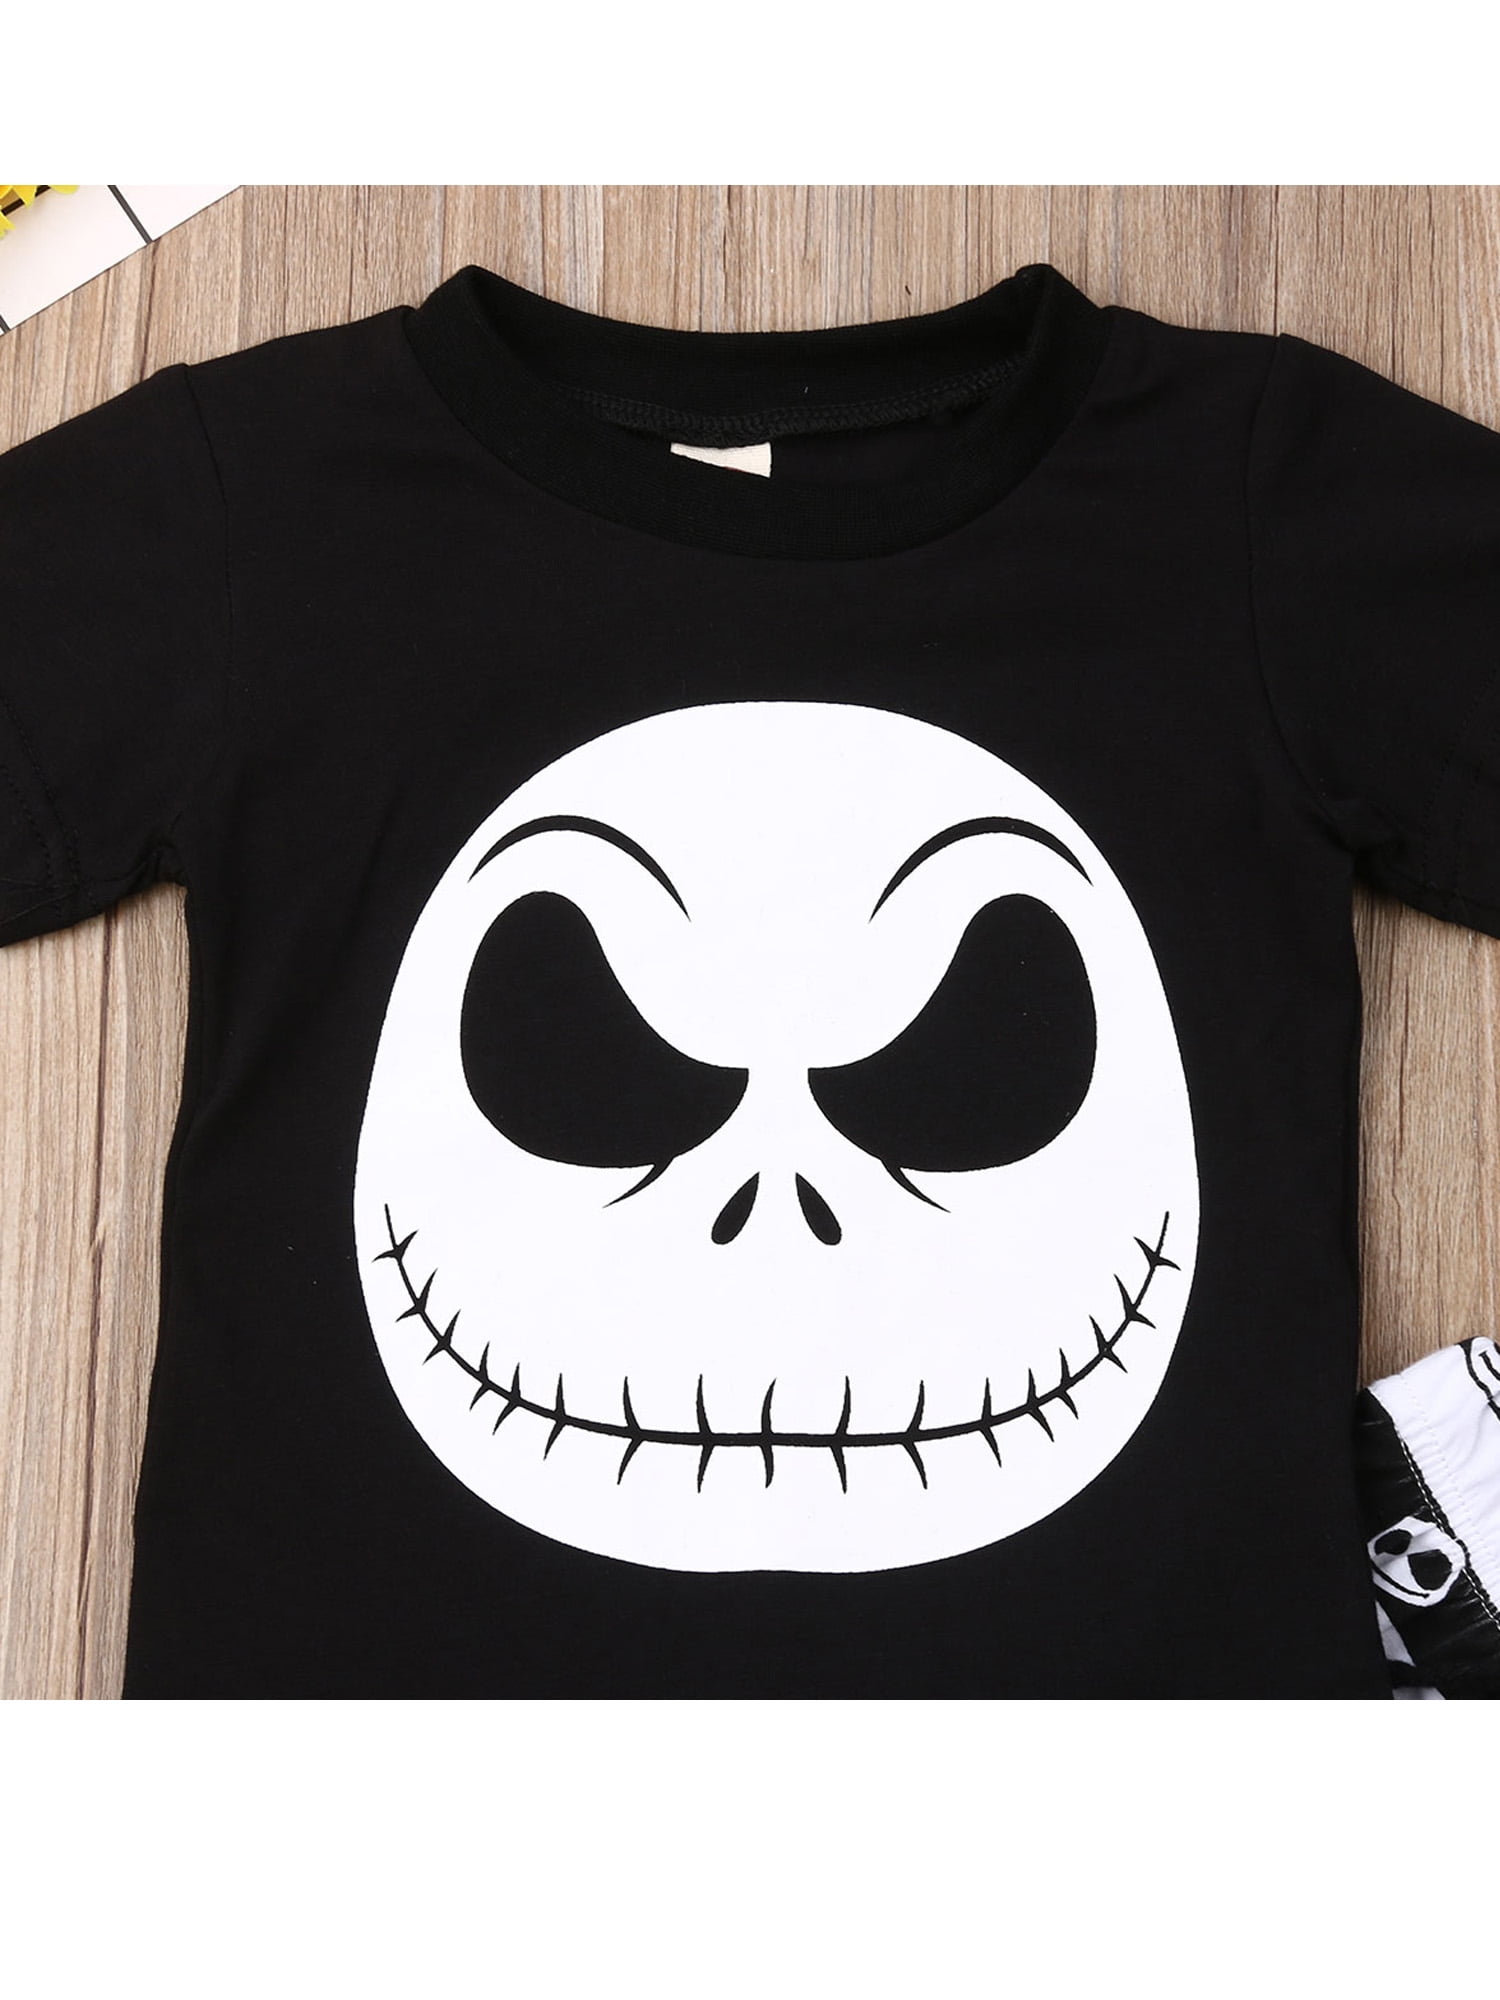 Infant Baby Boys Printed T-shirt Striped Short Handbang and Hat Skull GA 